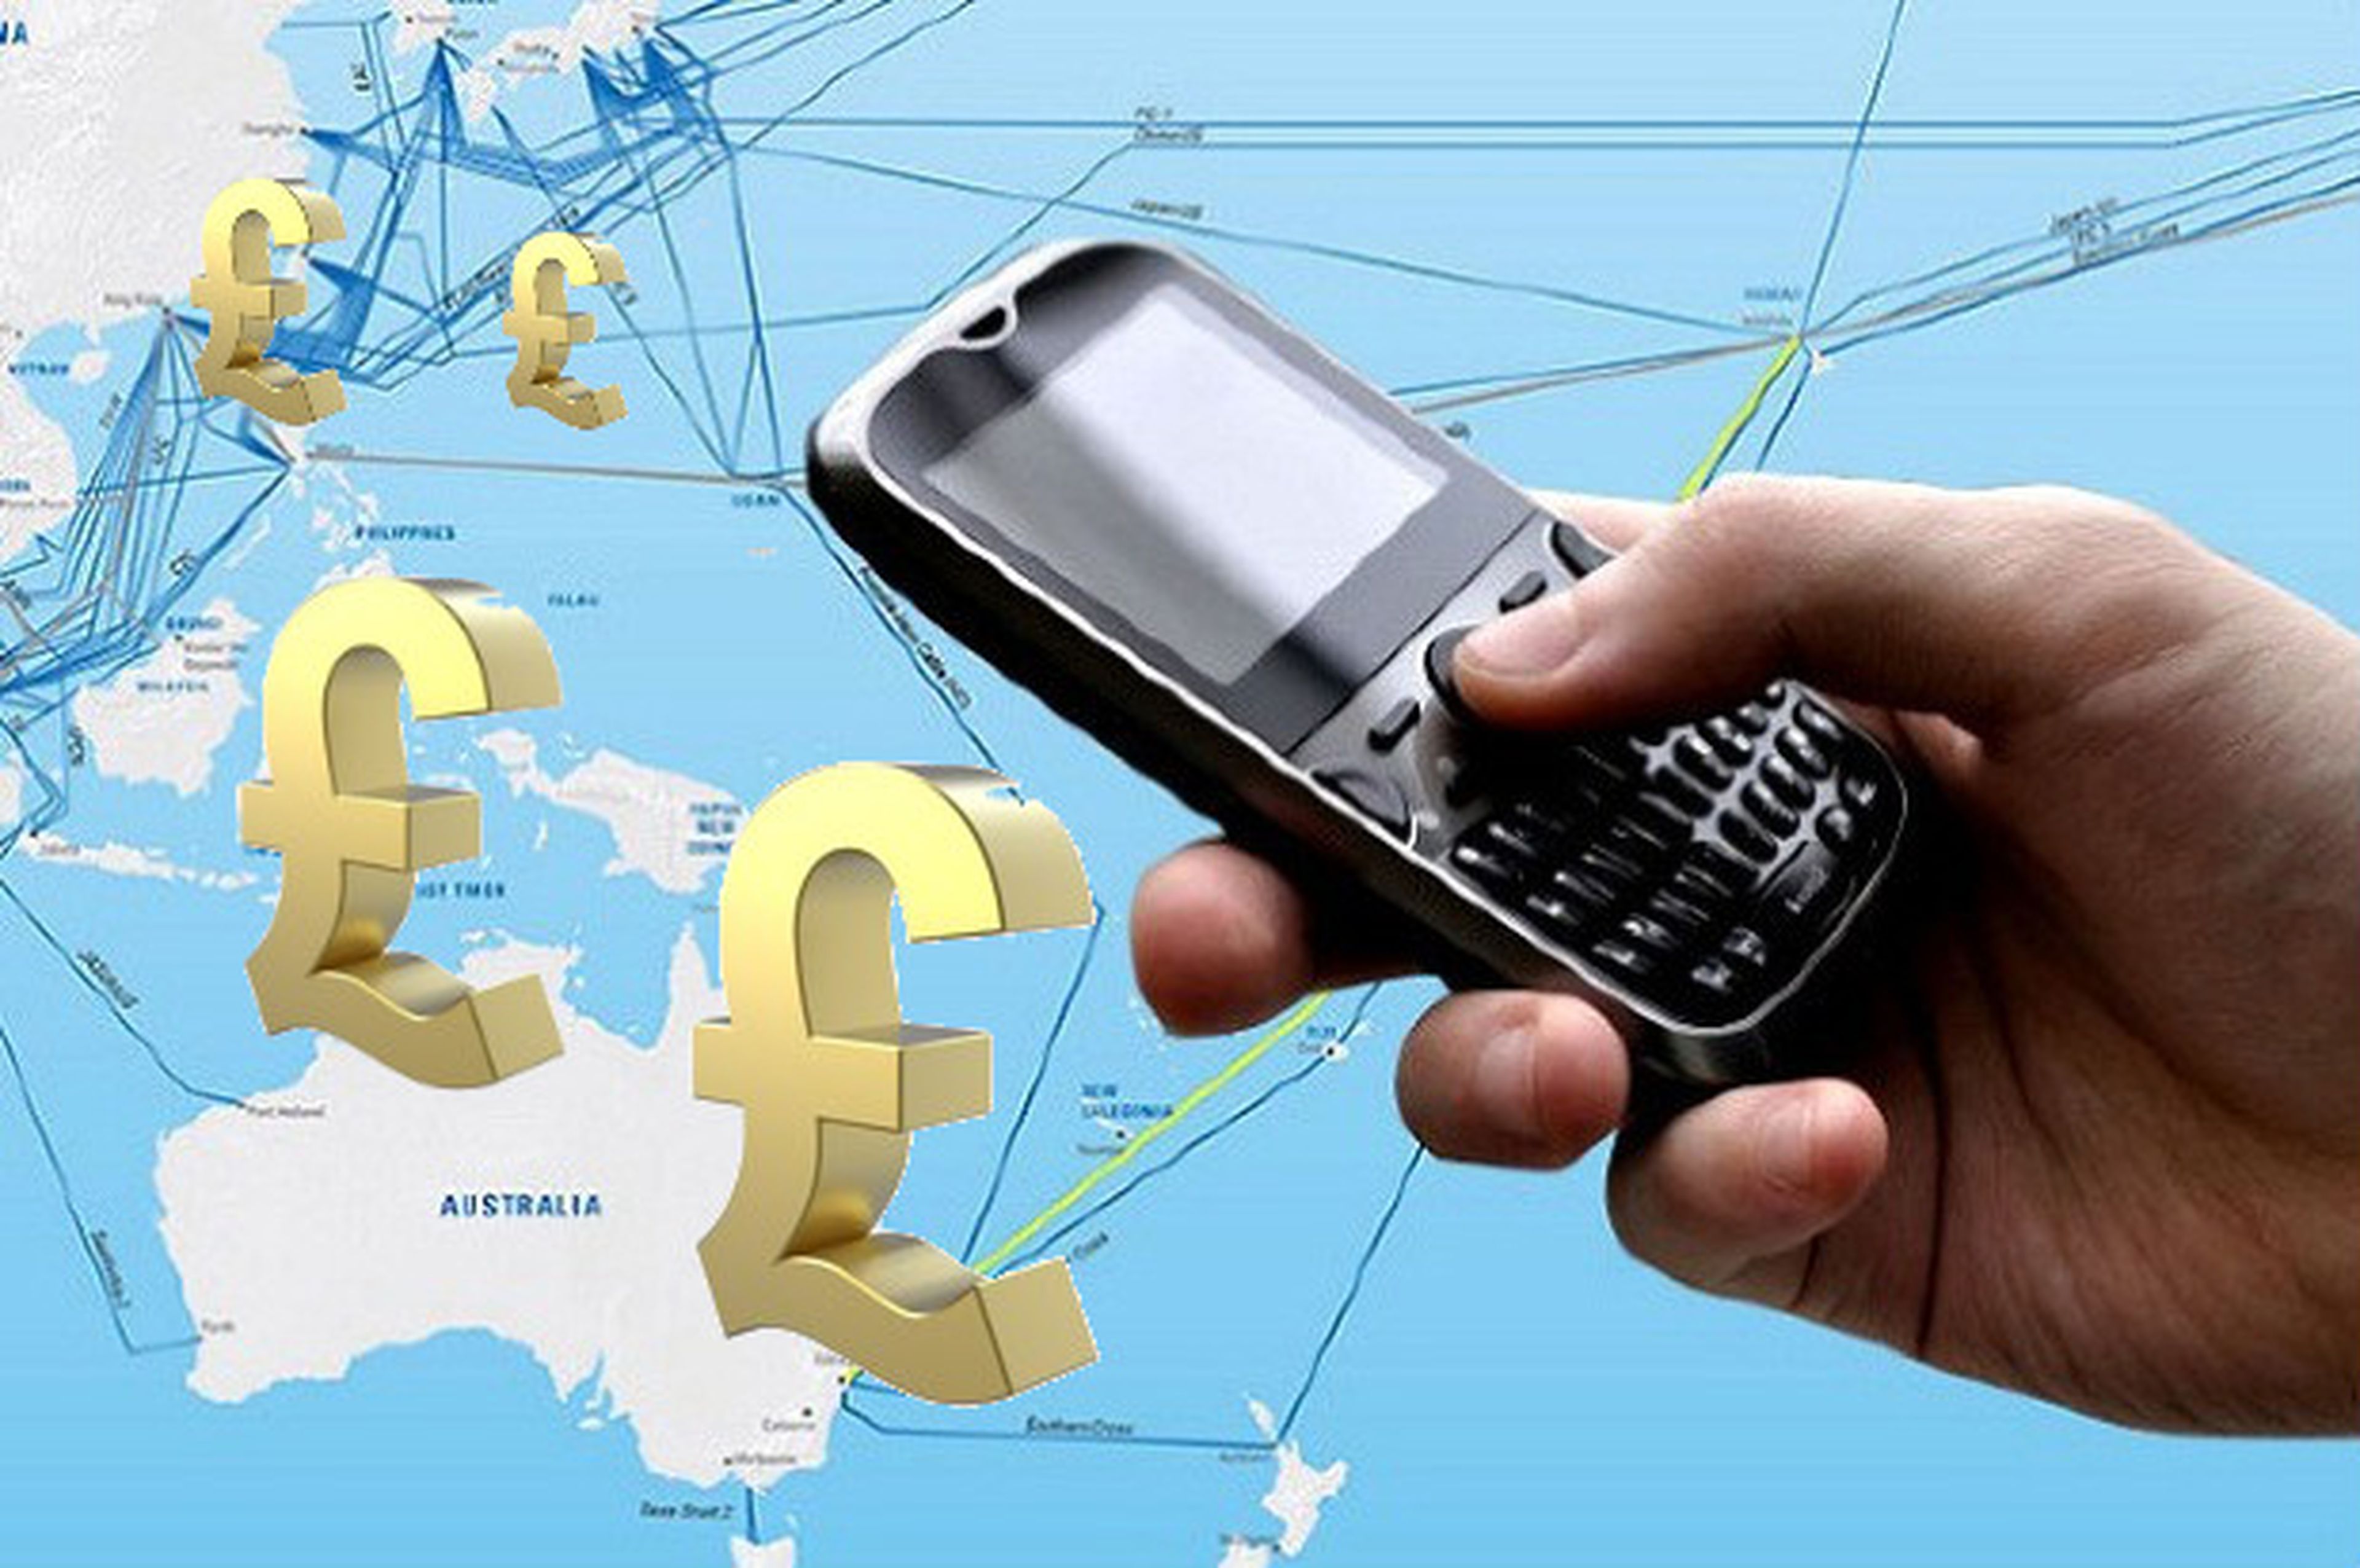 Inglesa gasta 20.000 libras en roaming